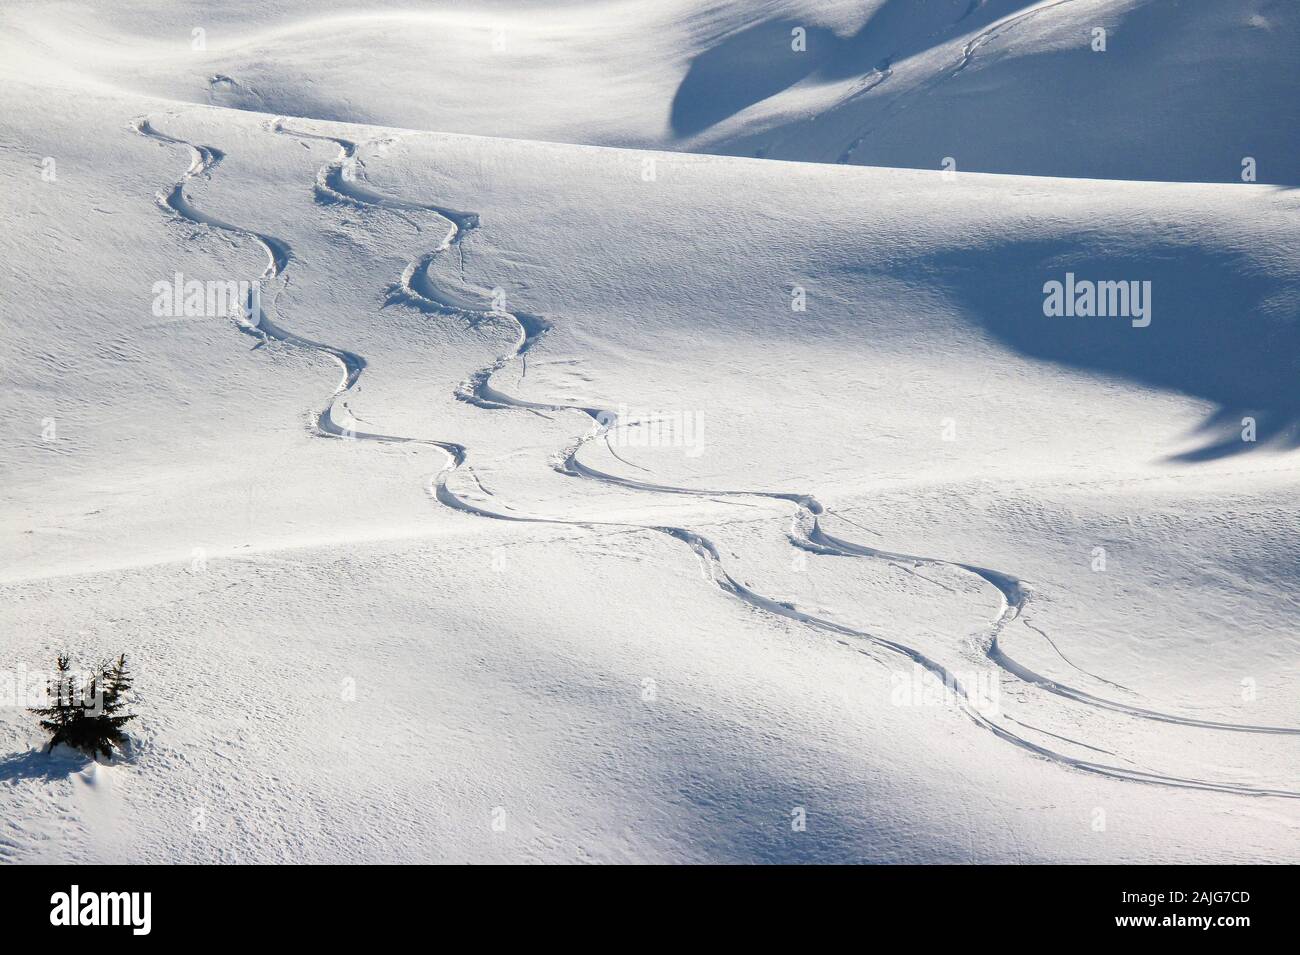 Alpes Italianos, paisajes nevados: Twin snowboard senderos labrados en la nieve fresca. Fondo de Navidad. Free Ride, freeride de esquí Foto de stock